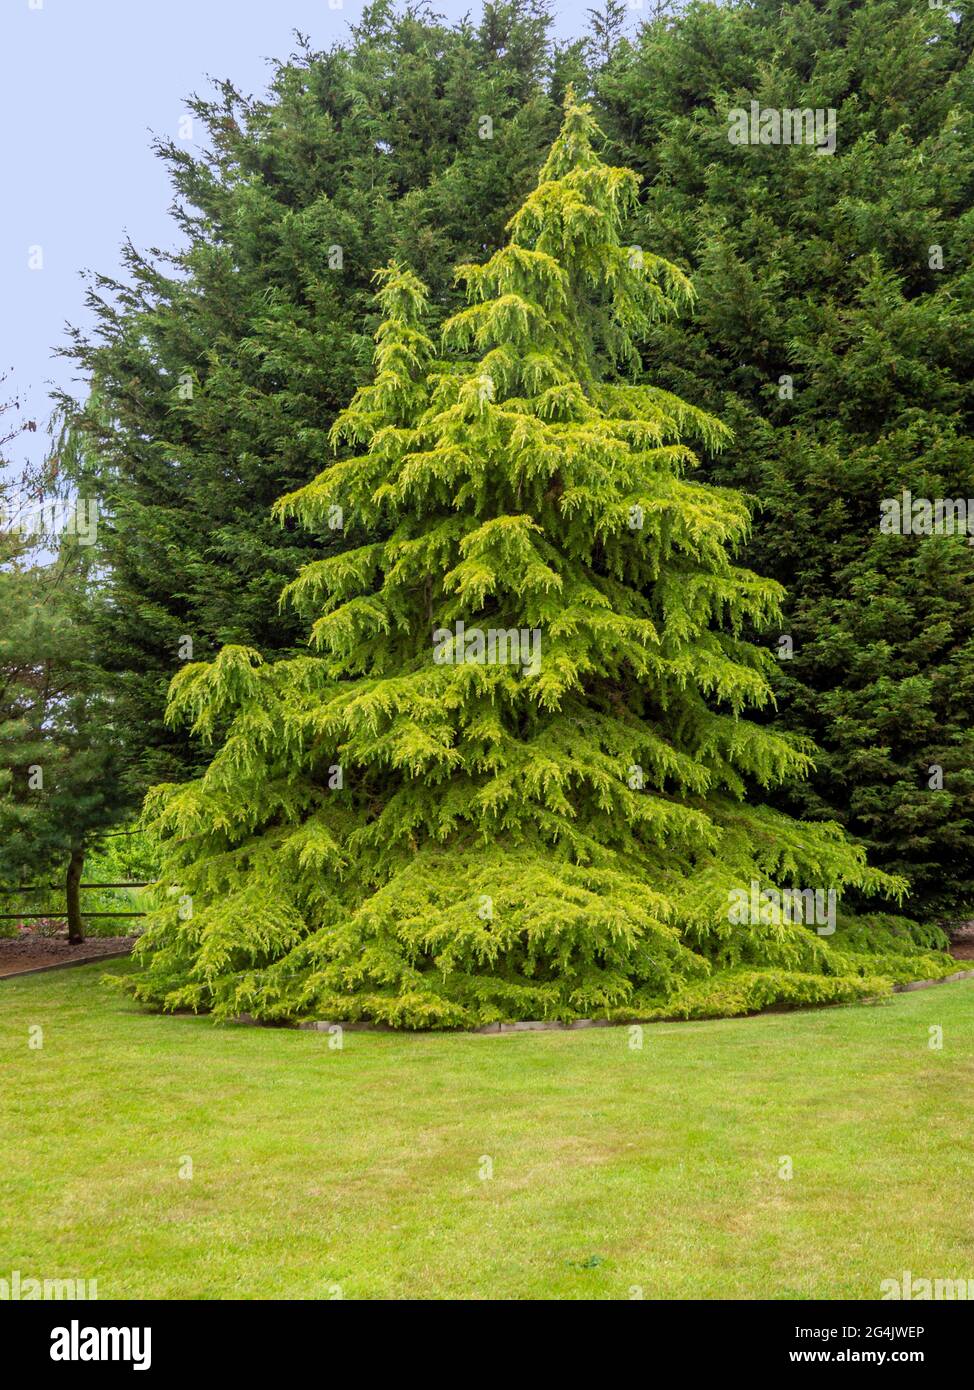 Golden Deodar cedar tree in a garden Stock Photo